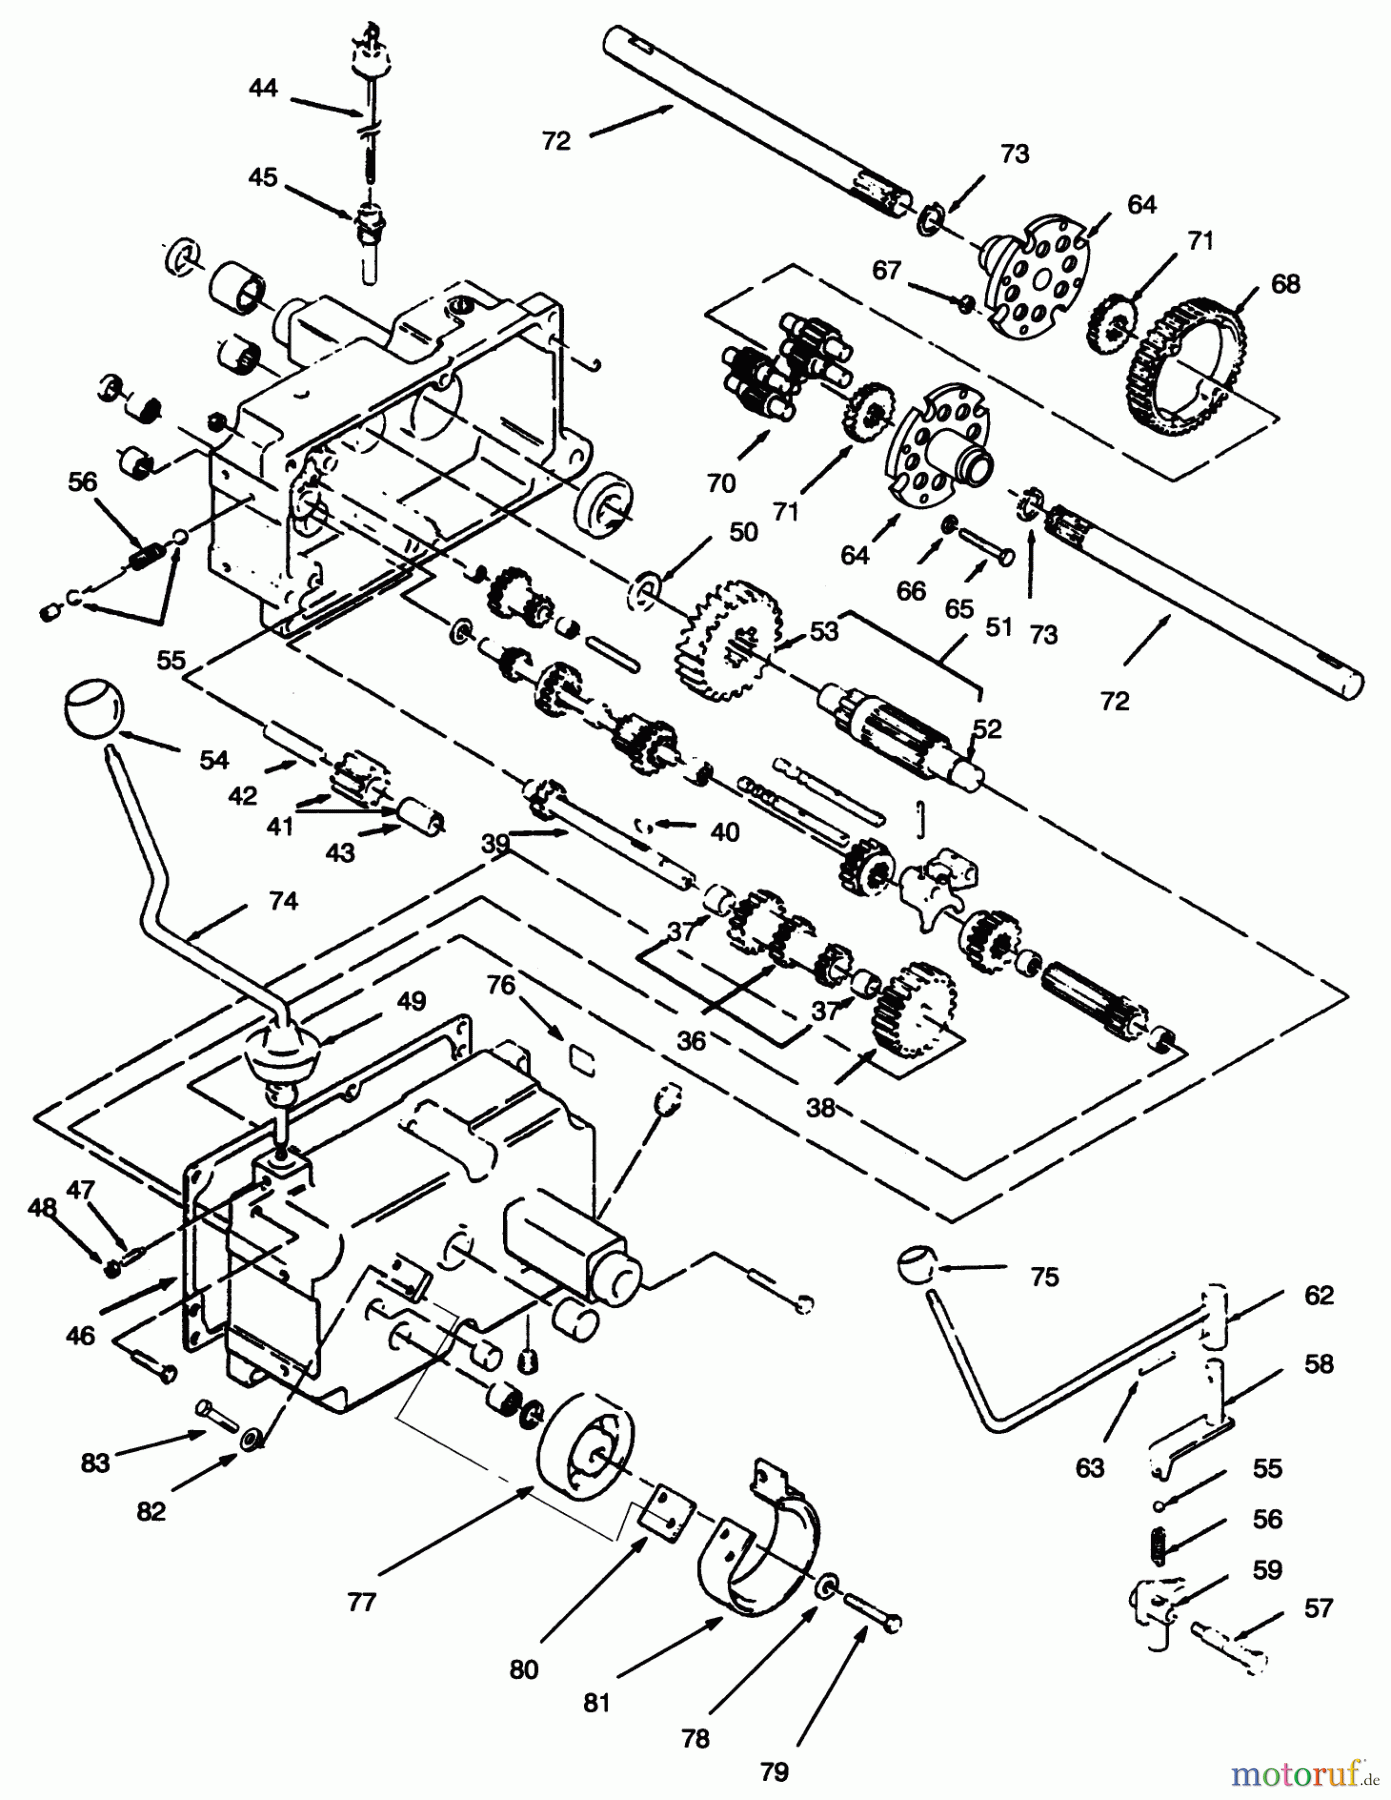  Toro Neu Mowers, Lawn & Garden Tractor Seite 1 73420 (416-8) - Toro 416-8 Garden Tractor, 1995 (5900615-5900714) TRANSMISSION 8-SPEED #2